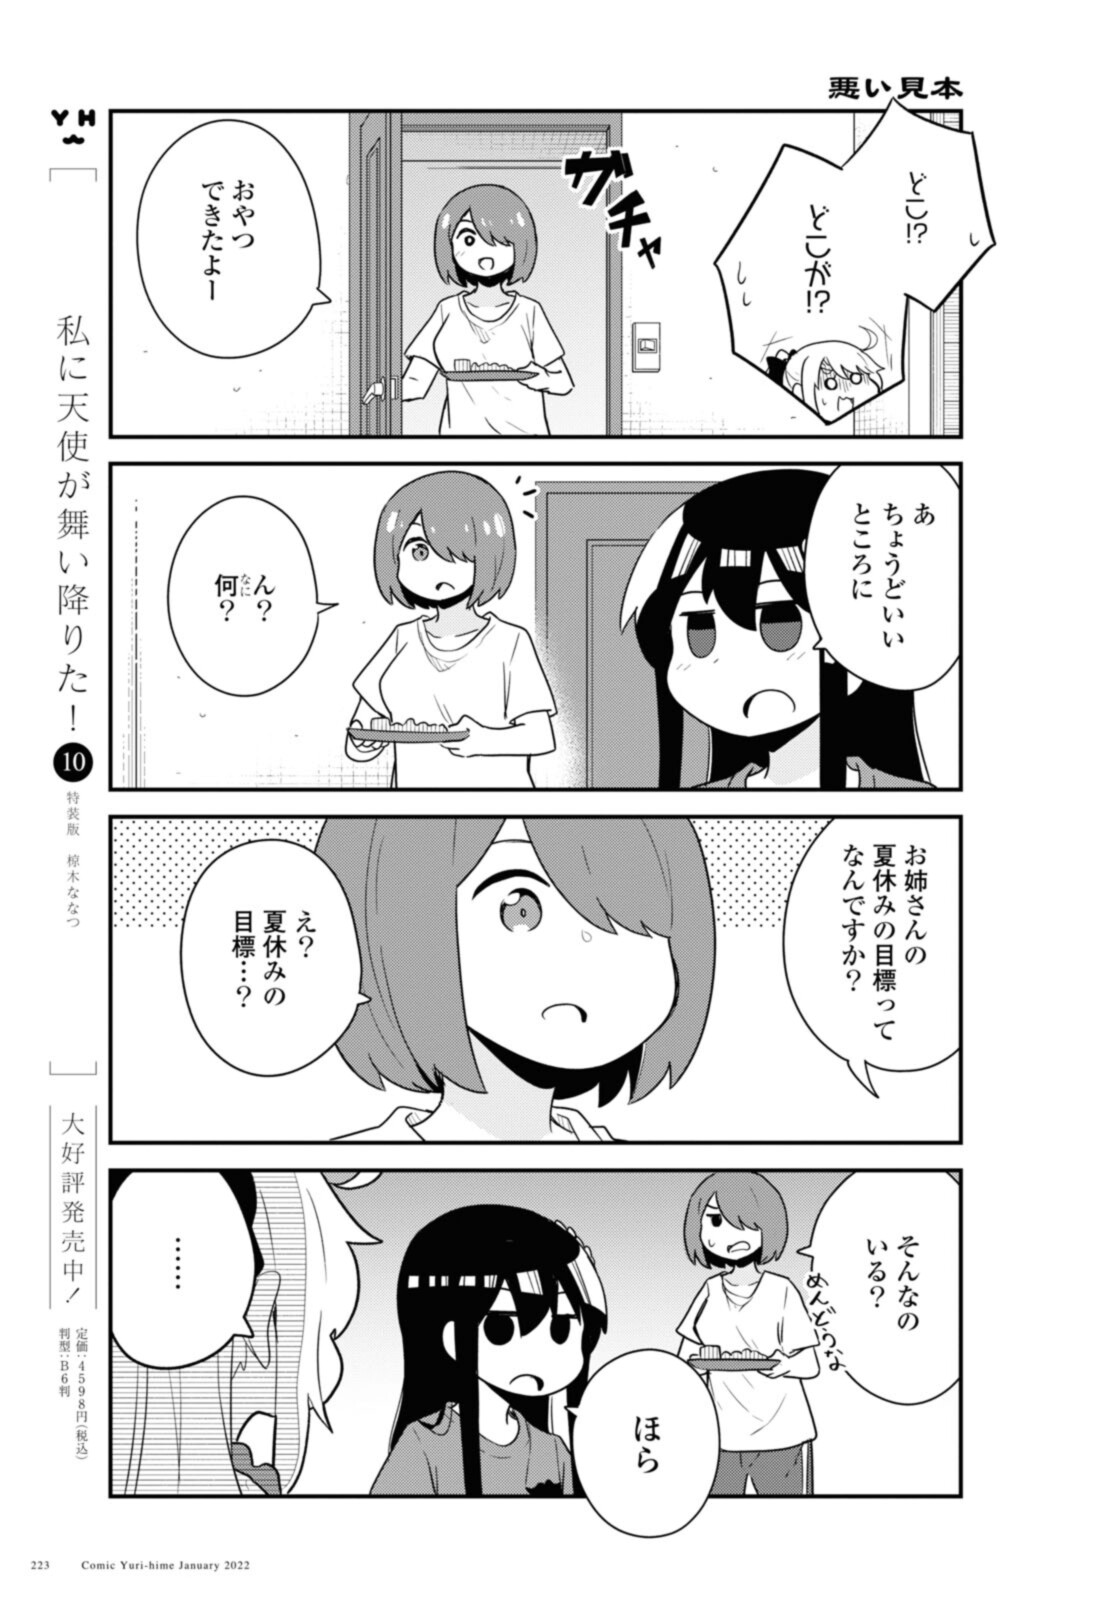 Watashi ni Tenshi ga Maiorita! - Chapter 91 - Page 3